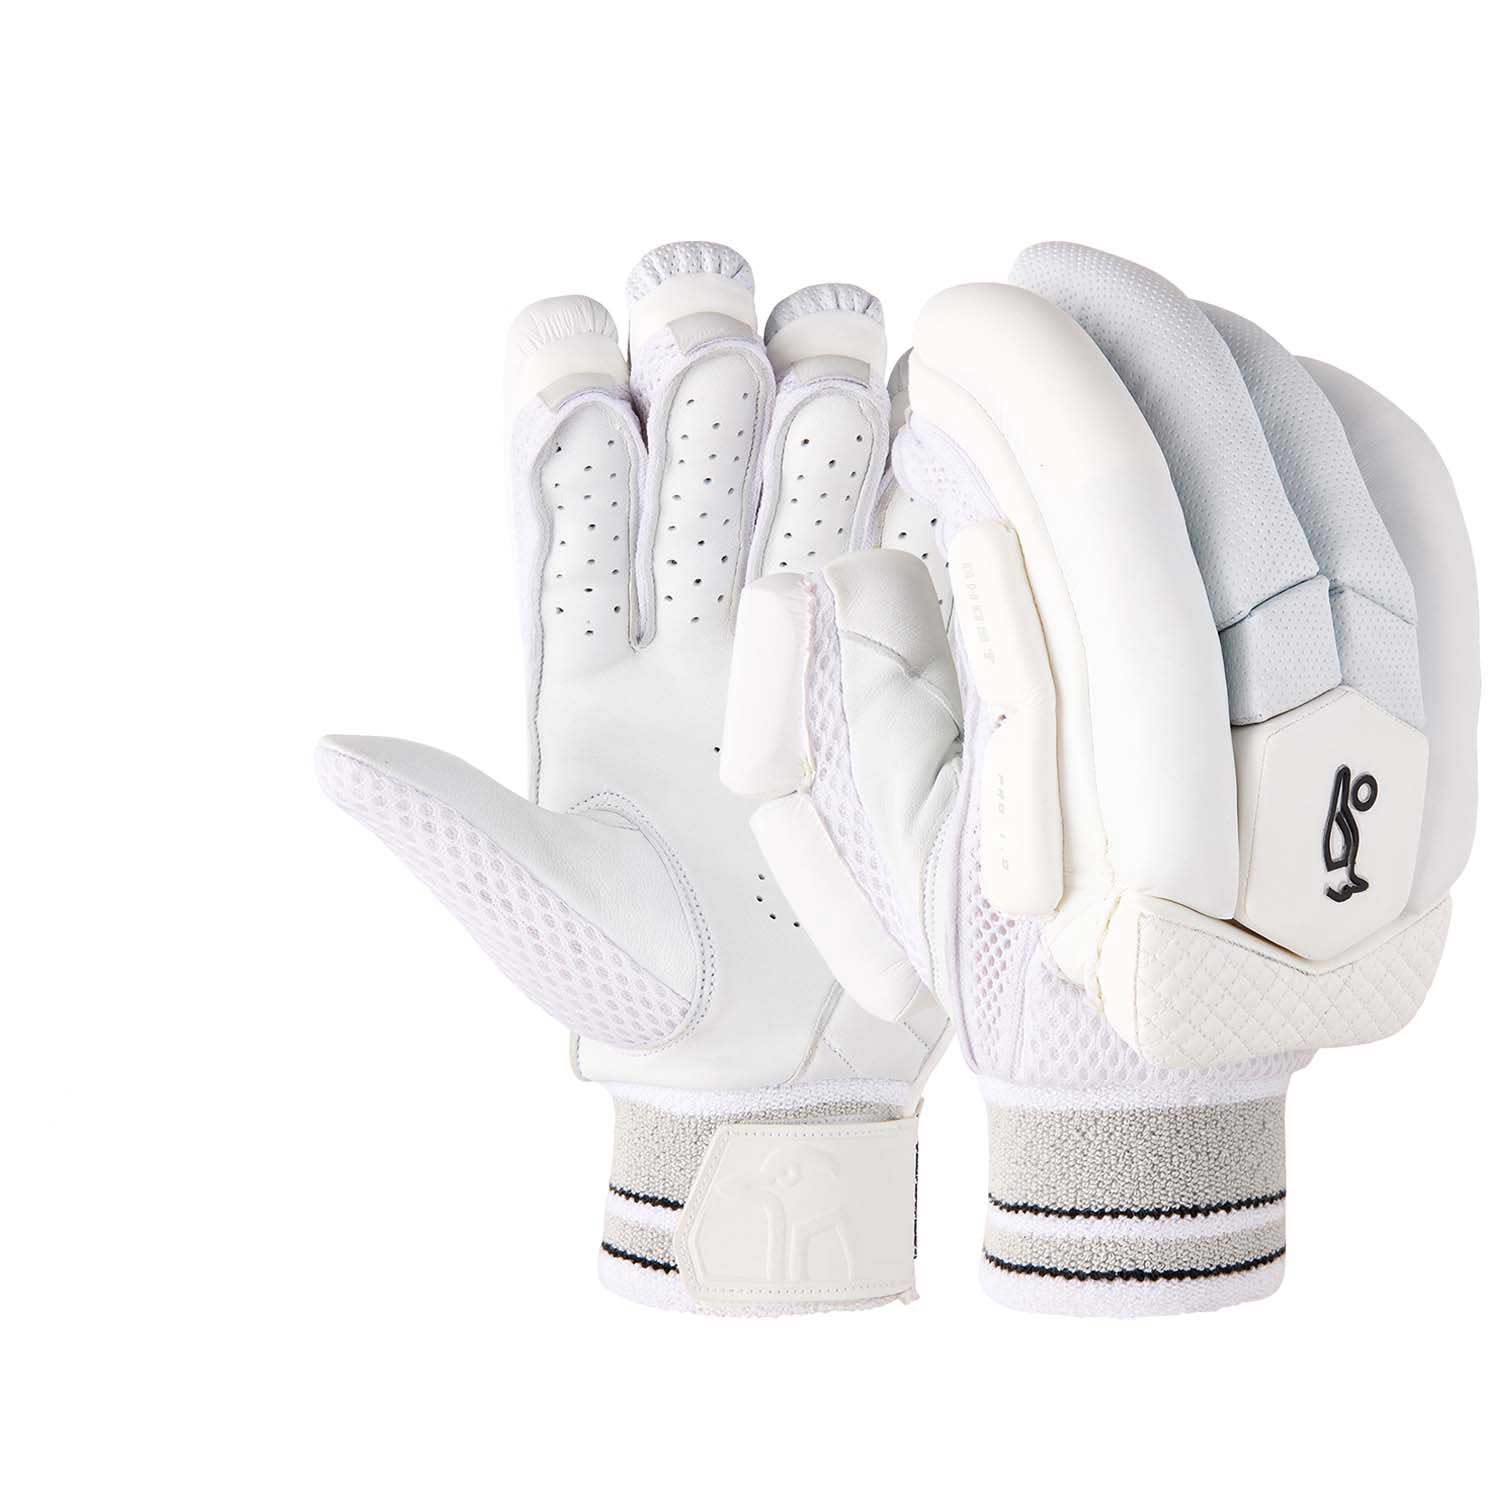 Kookaburra Ghost Pro 1.0 Cricket Batting Gloves - The Cricket Warehouse